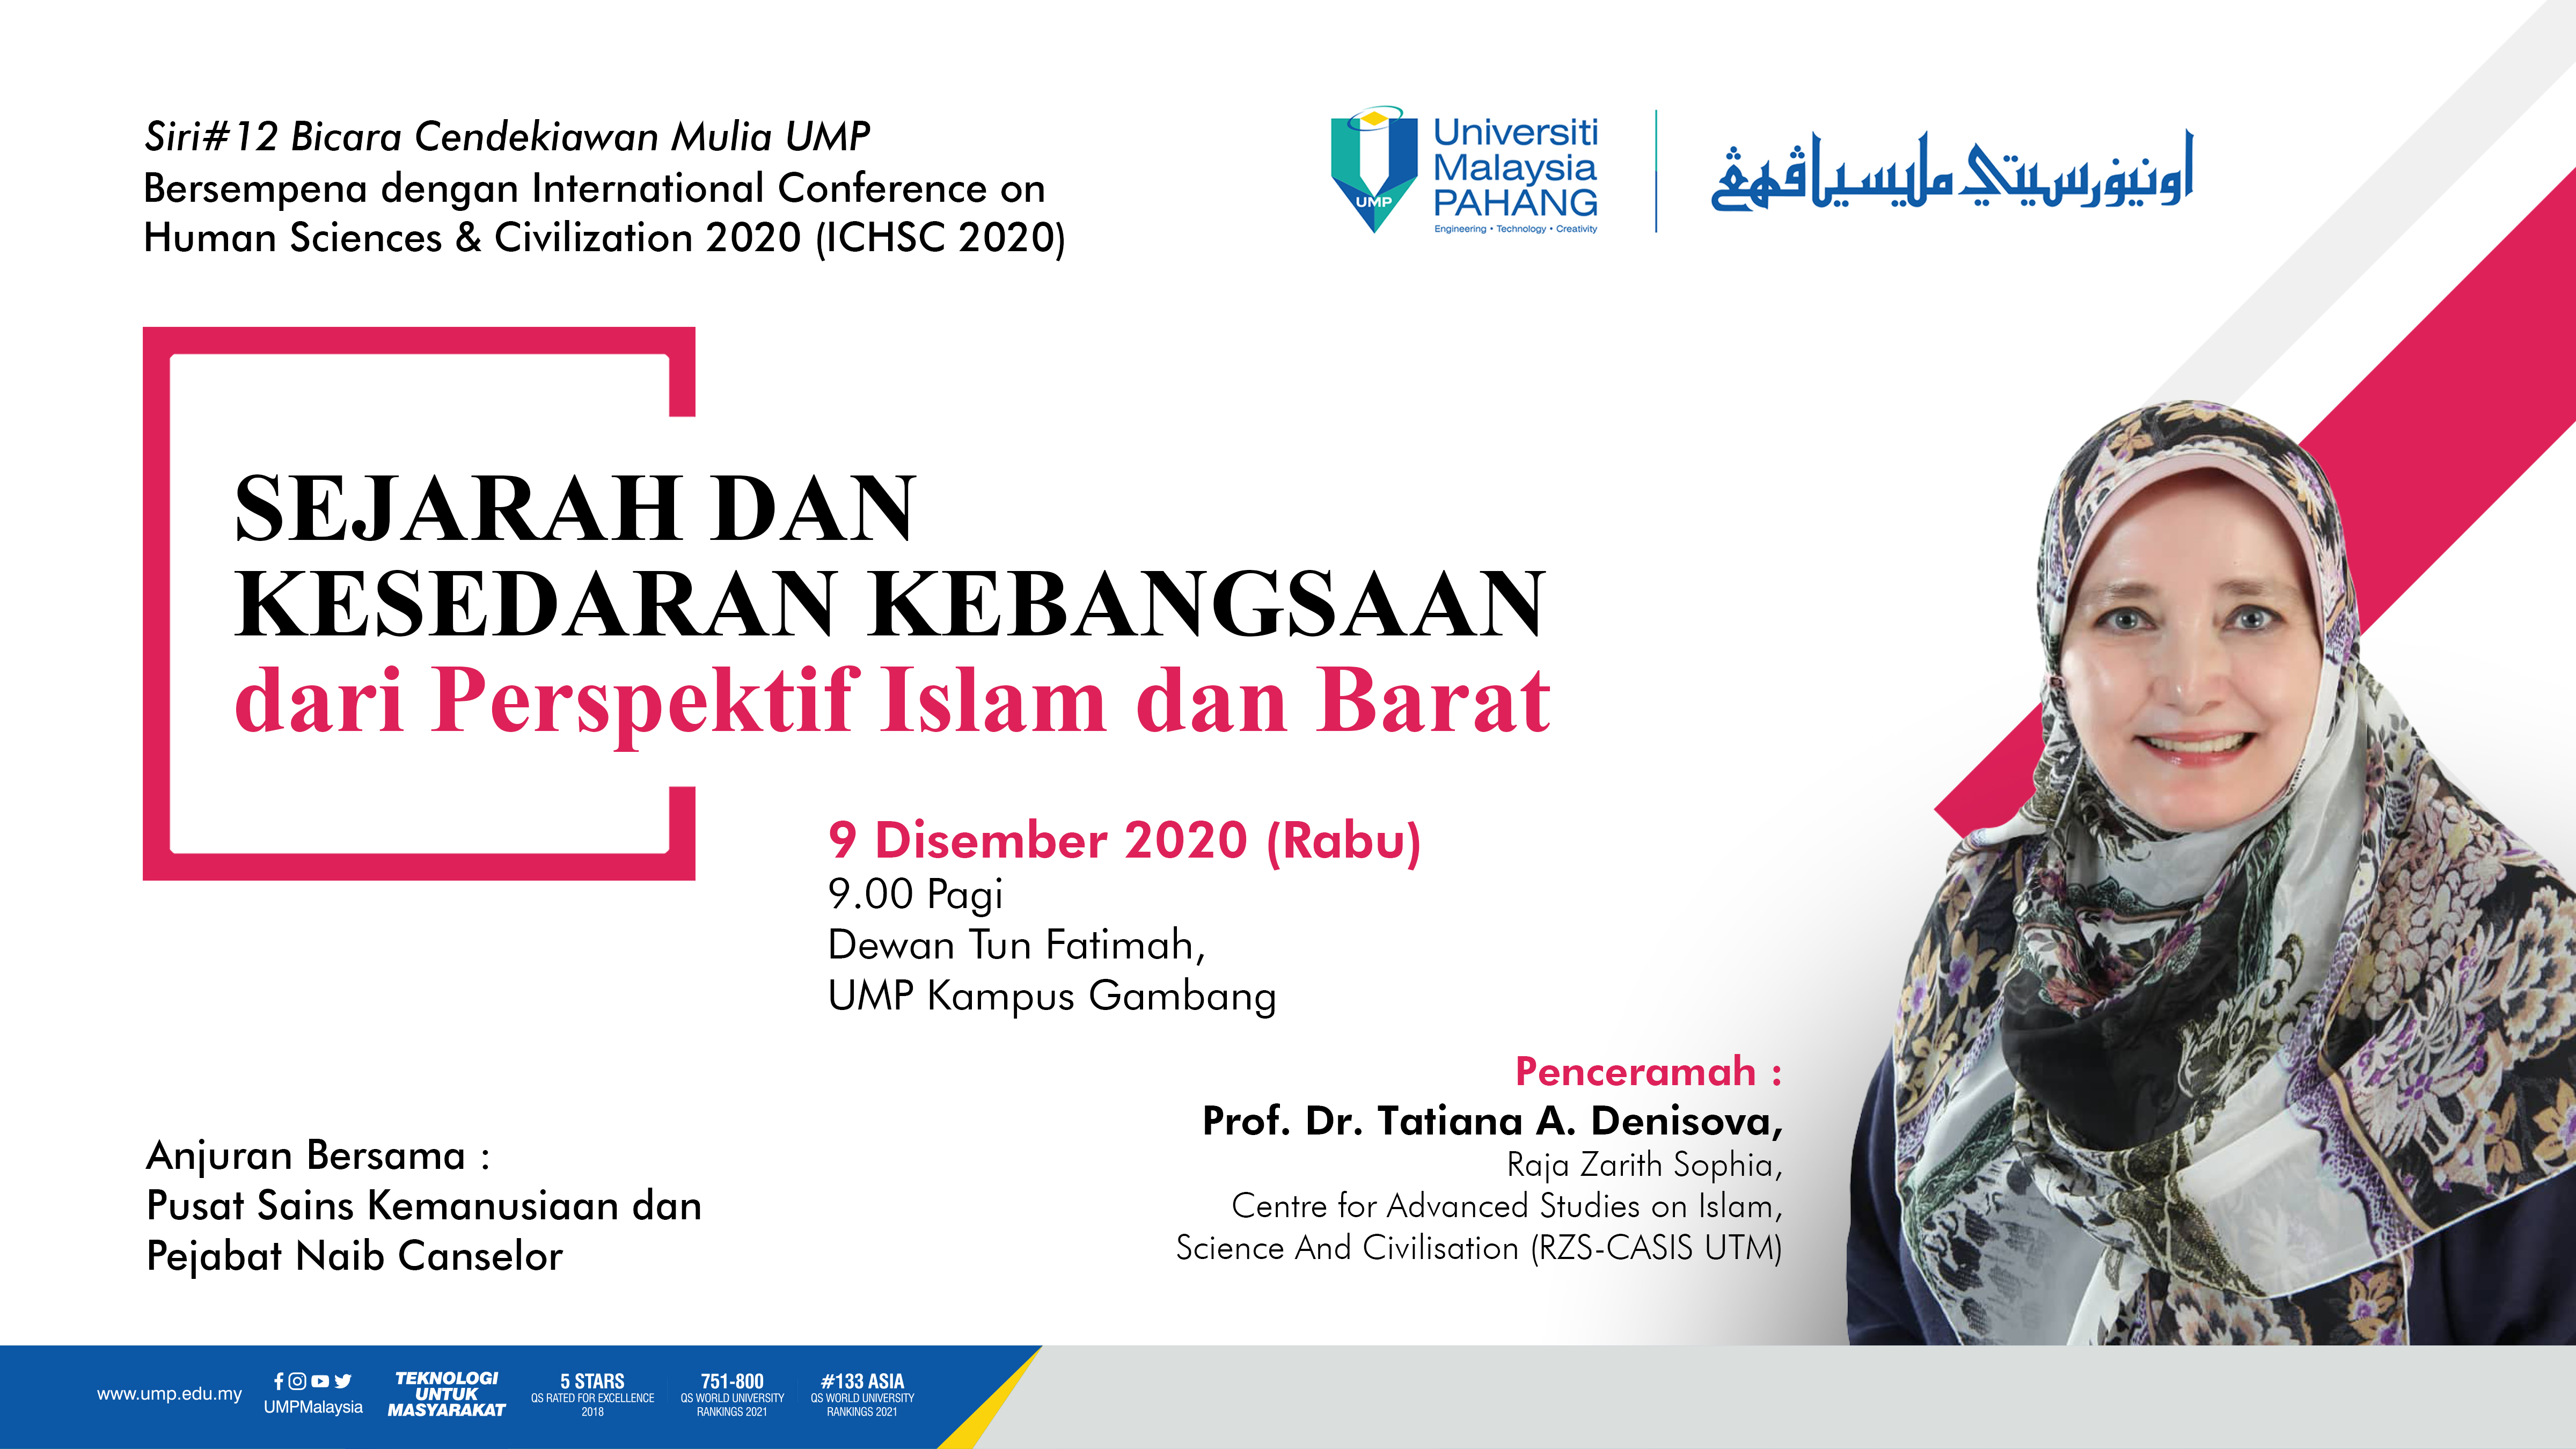 Bicara Cendekiawan Mulia  : Sejarah Dan Kesedaran Kebangsaan dari Perspektif Islam dan Barat Bersama Prof. Dr. Tatiana A. Denisova